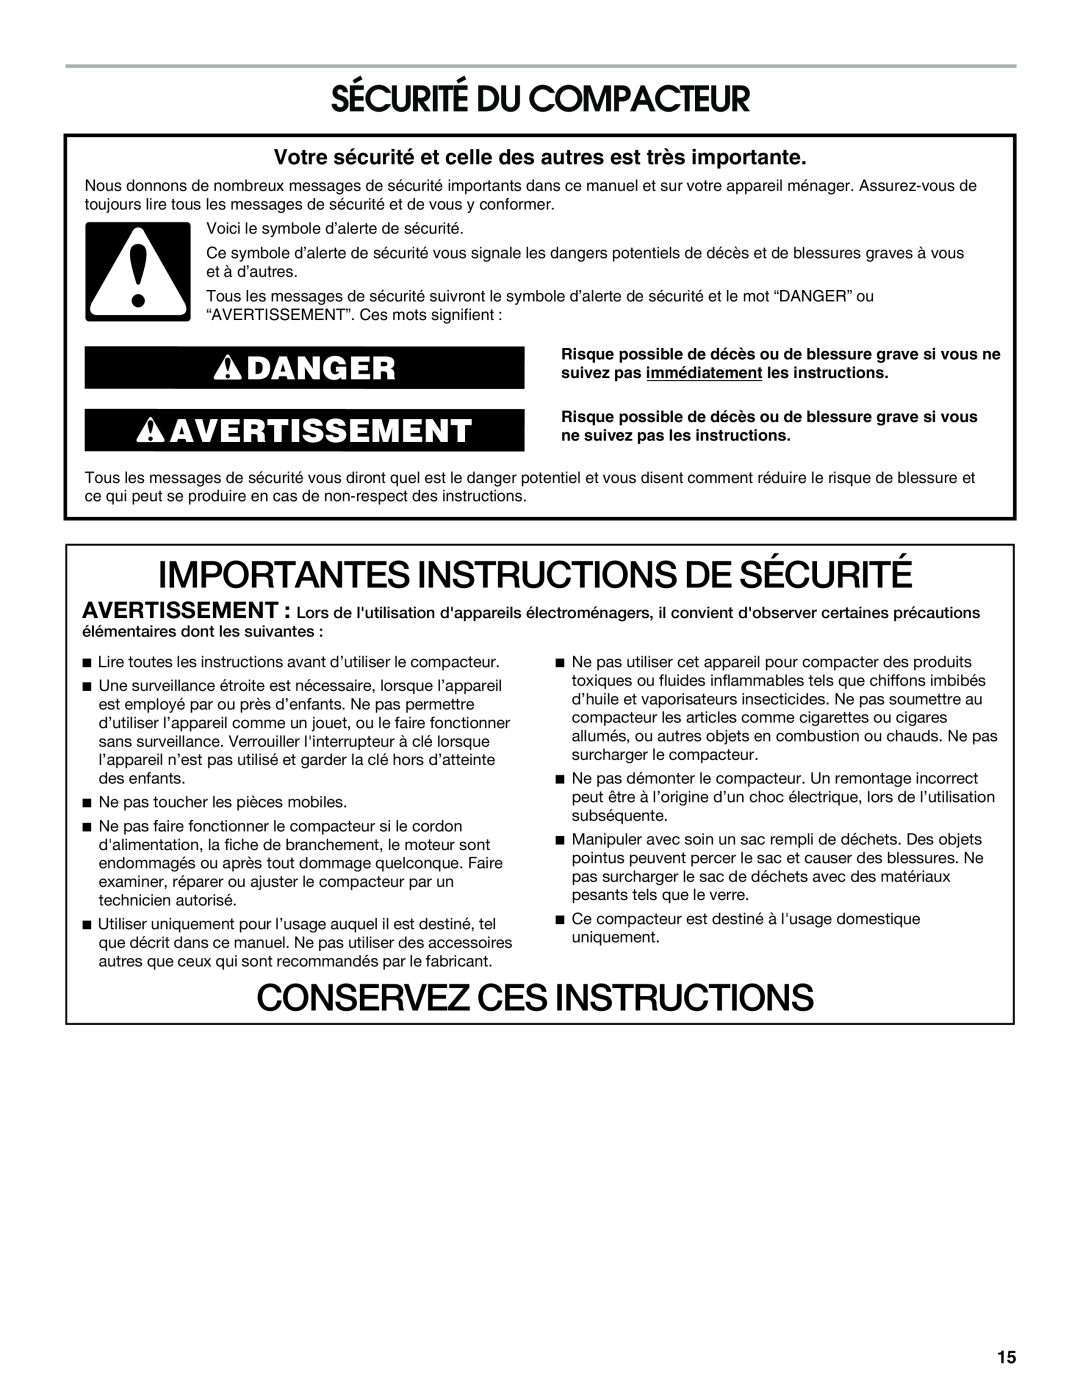 Jenn-Air W10242571A manual Importantes Instructions De Sécurité, Conservez Ces Instructions, Sécurité Du Compacteur 